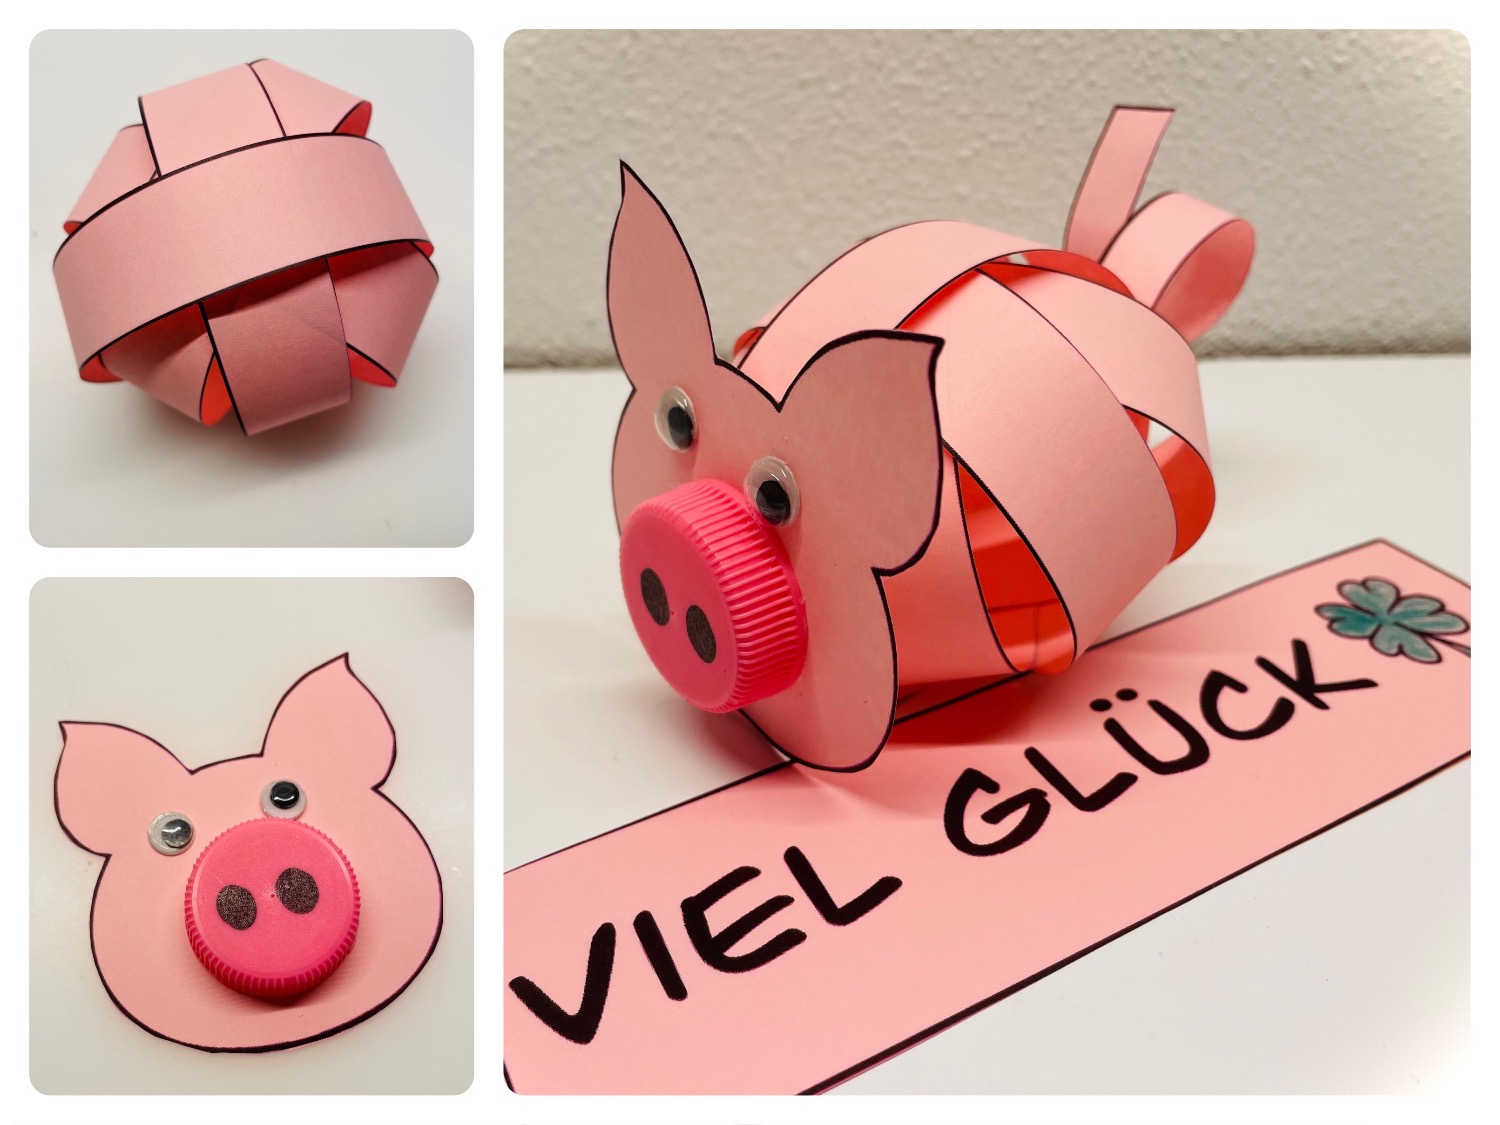 Titelbild zur Idee für die Beschäftigung mit Kindern 'Schwein aus Papierstreifen basteln'